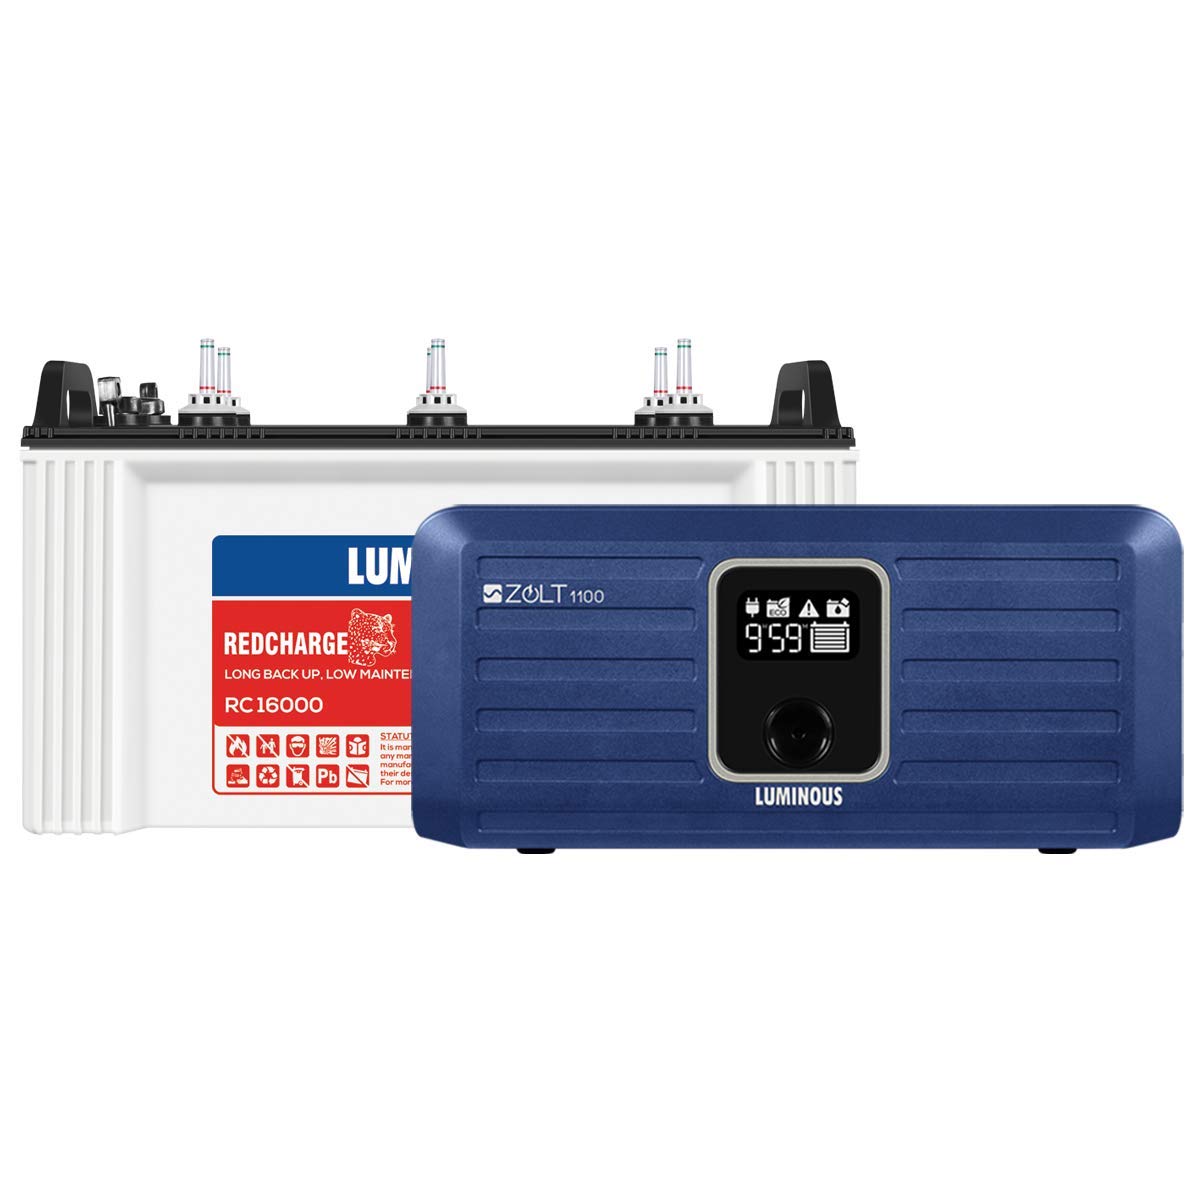 Luminous Zolt 1100 Inverter 900VA + RC16000 135 Ah Short Tubular Battery for 1BHK